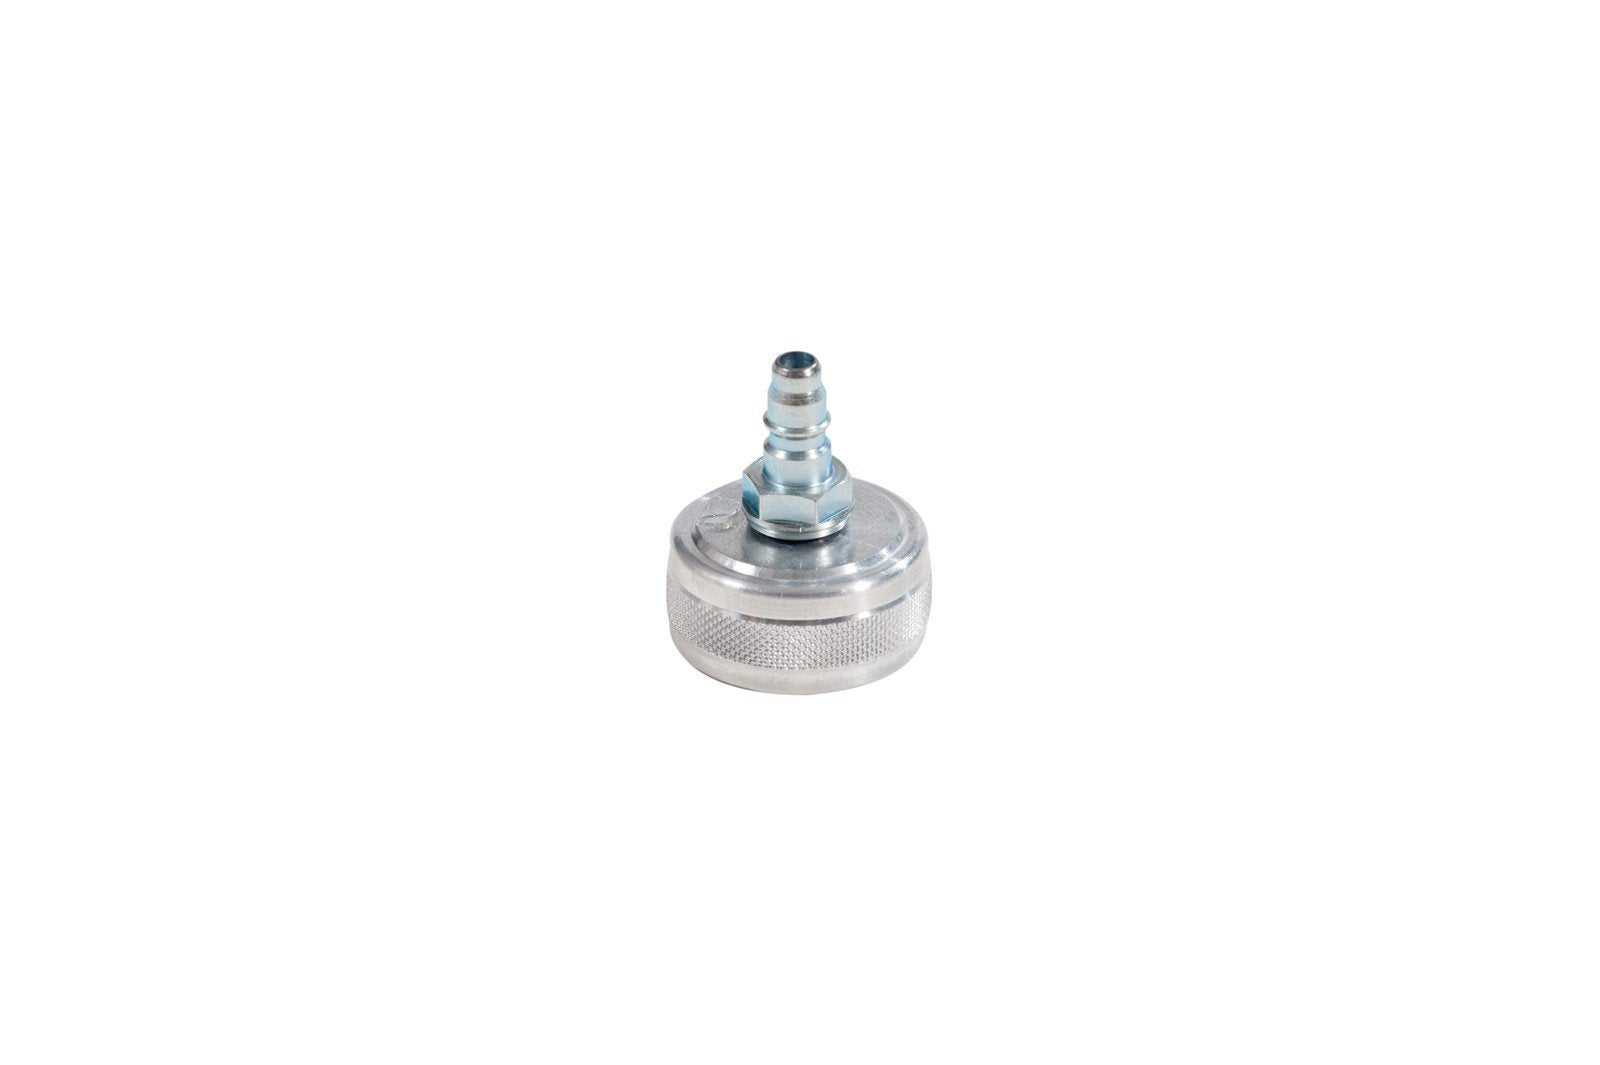 083-1802-000 - Screw plug model 2 diameter 21.5